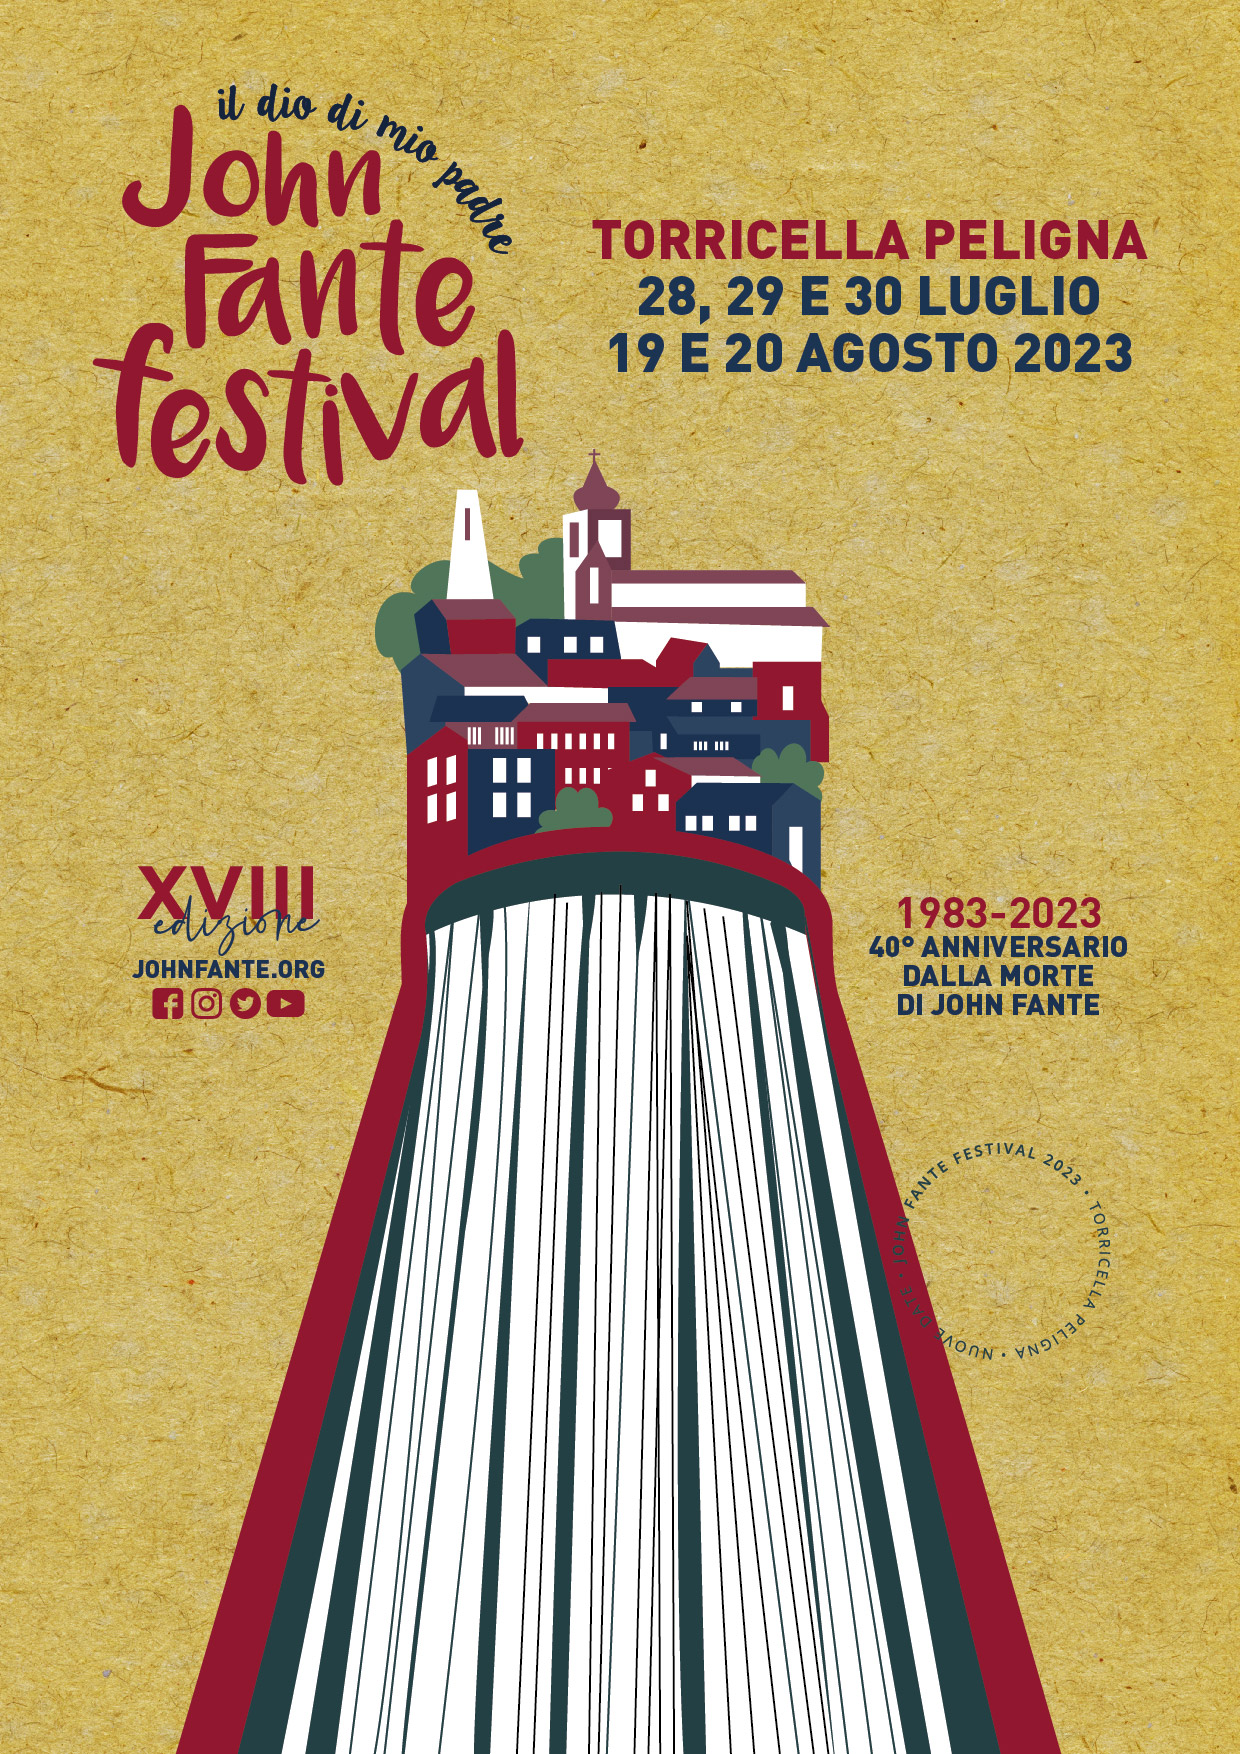 Torna il John Fante Festival XVIII edizione (28-29-30 luglio e dal 19-20 agosto 2023) - Torricella Peligna (CH)